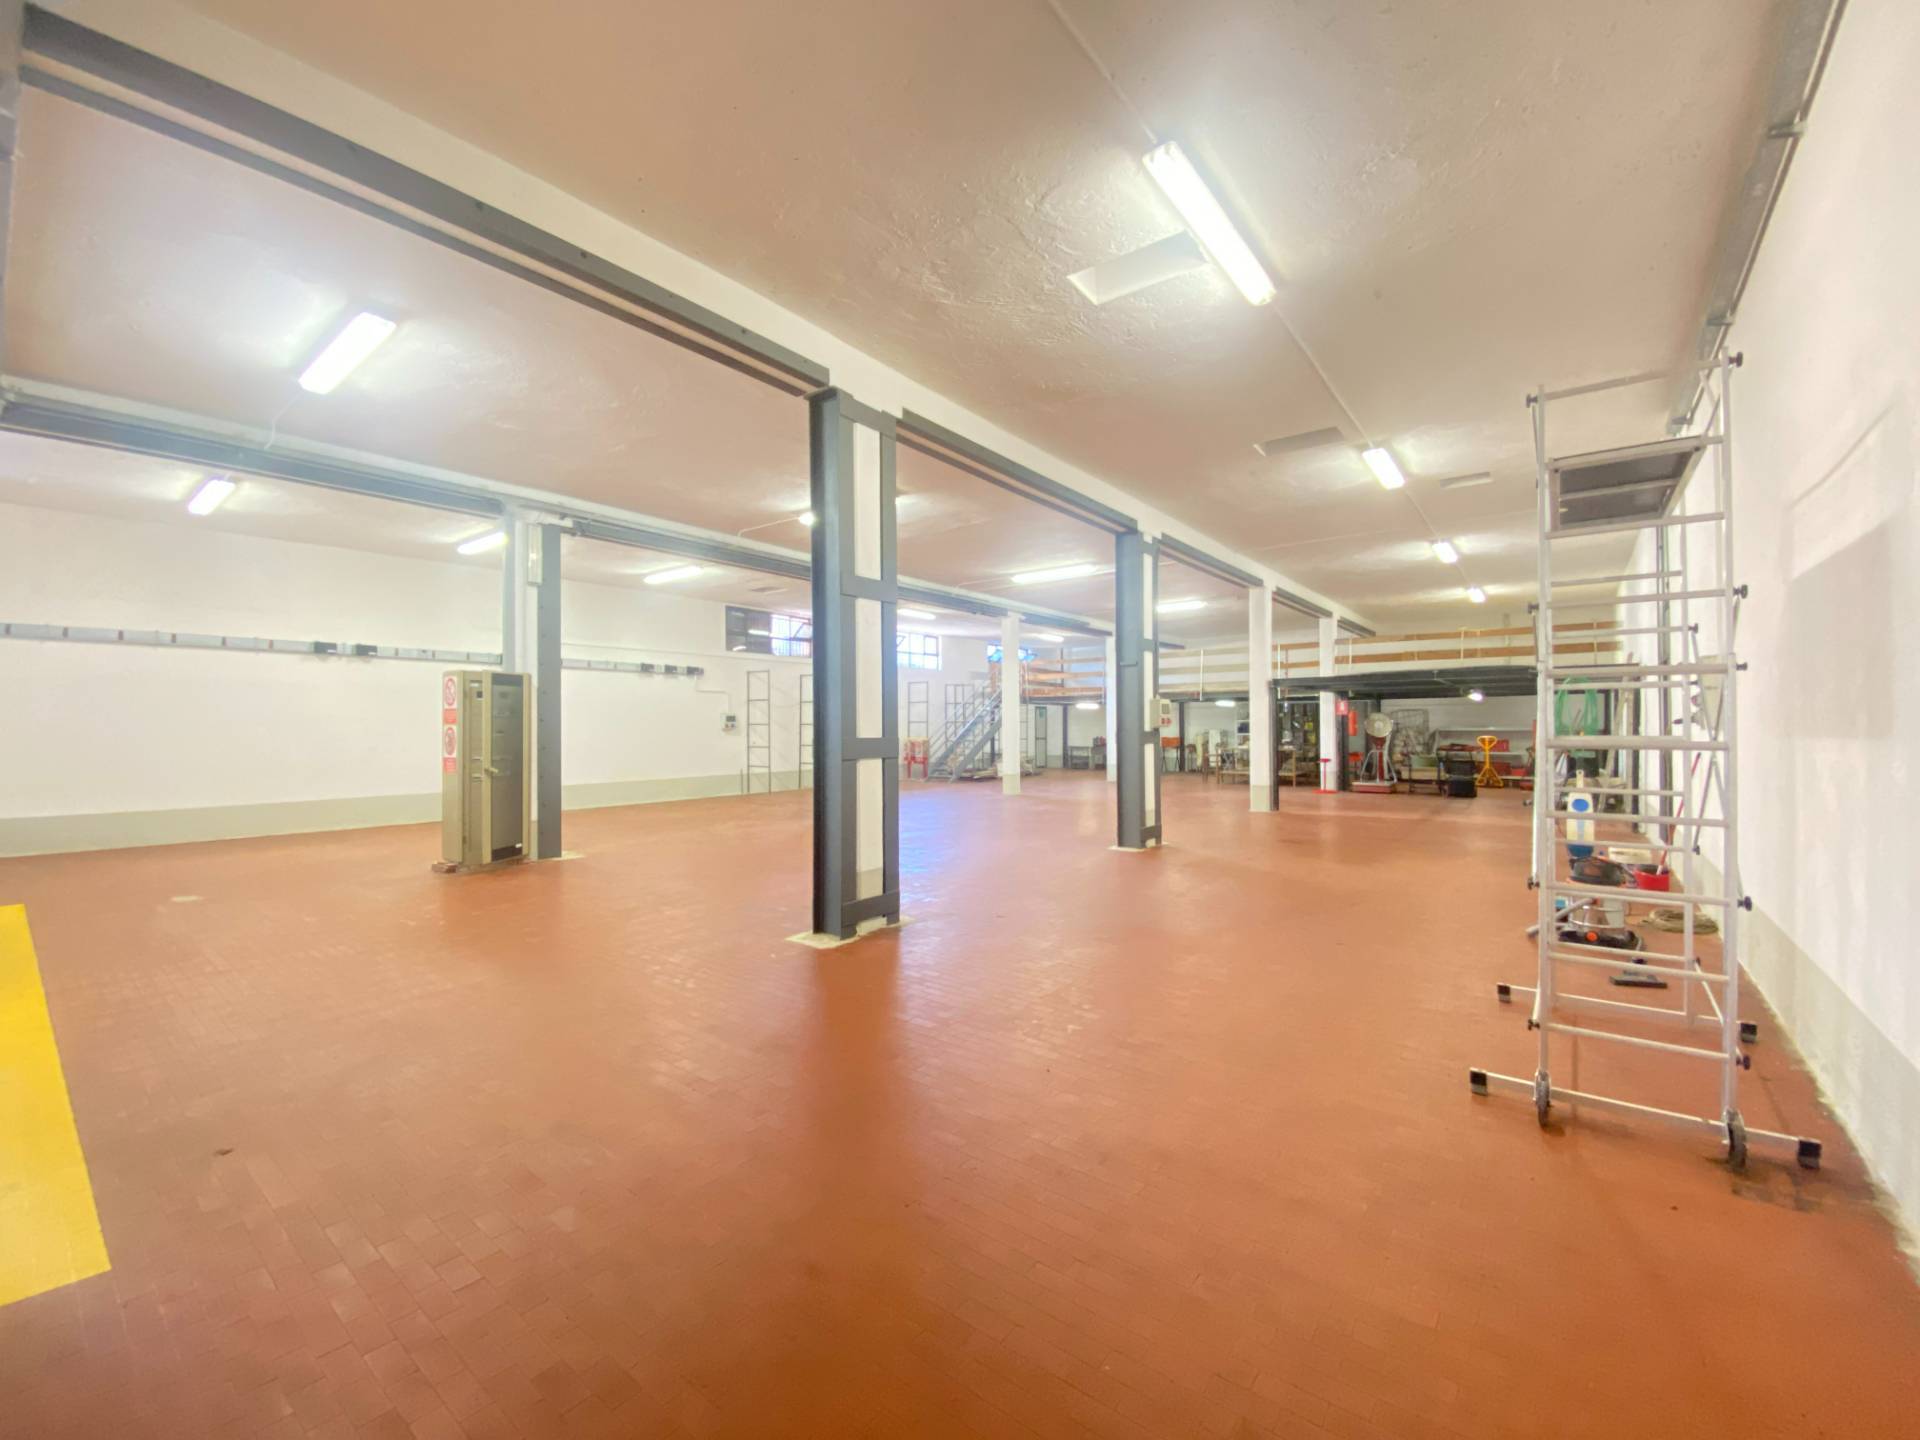 Laboratorio in vendita a Salò, 9999 locali, zona overde, prezzo € 350.000 | PortaleAgenzieImmobiliari.it